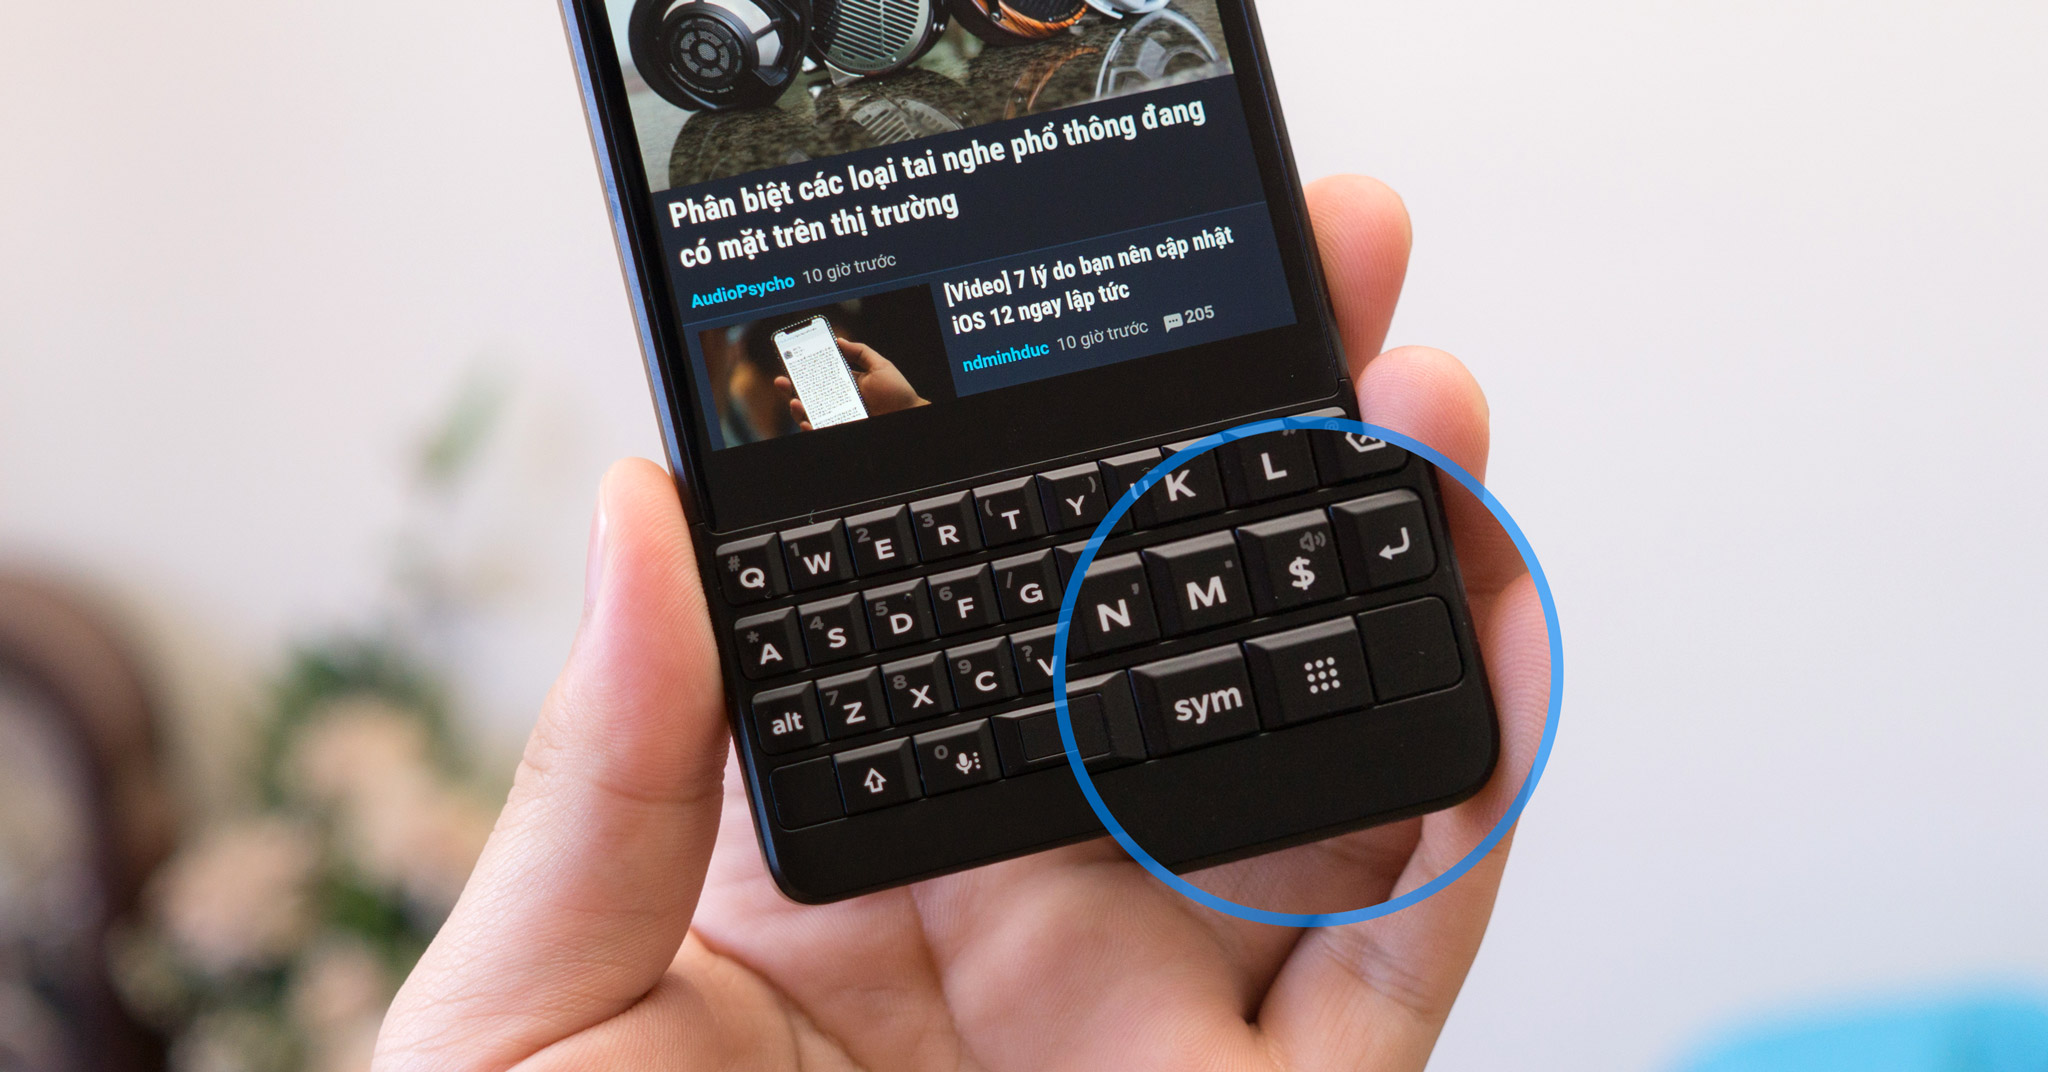 Chia sẻ kĩ hơn về phím đổi app nhanh của BlackBerry Key2: thứ mà iPhone và Android không có được